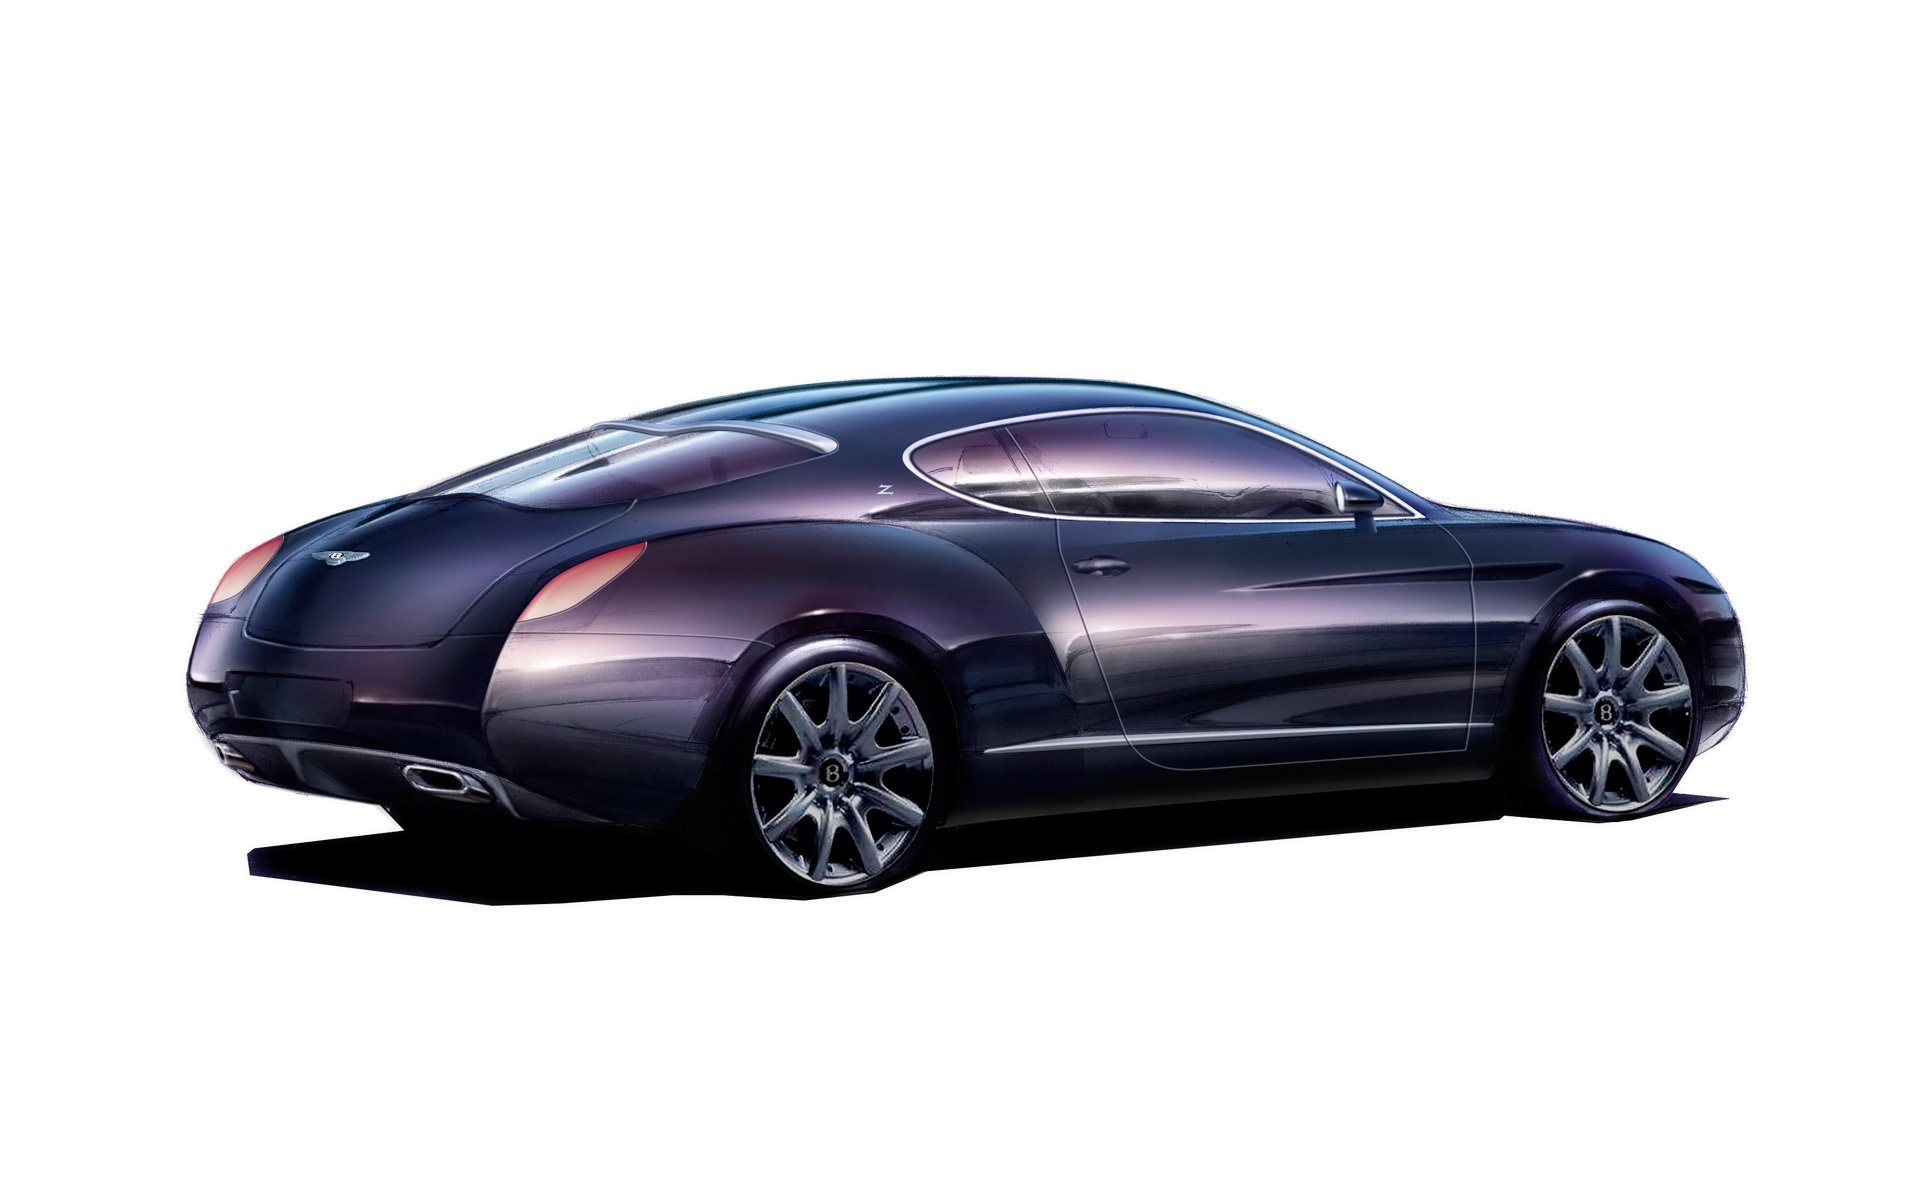 Bentley Zagato GTZ Sketch 2008 for 1920 x 1200 widescreen resolution